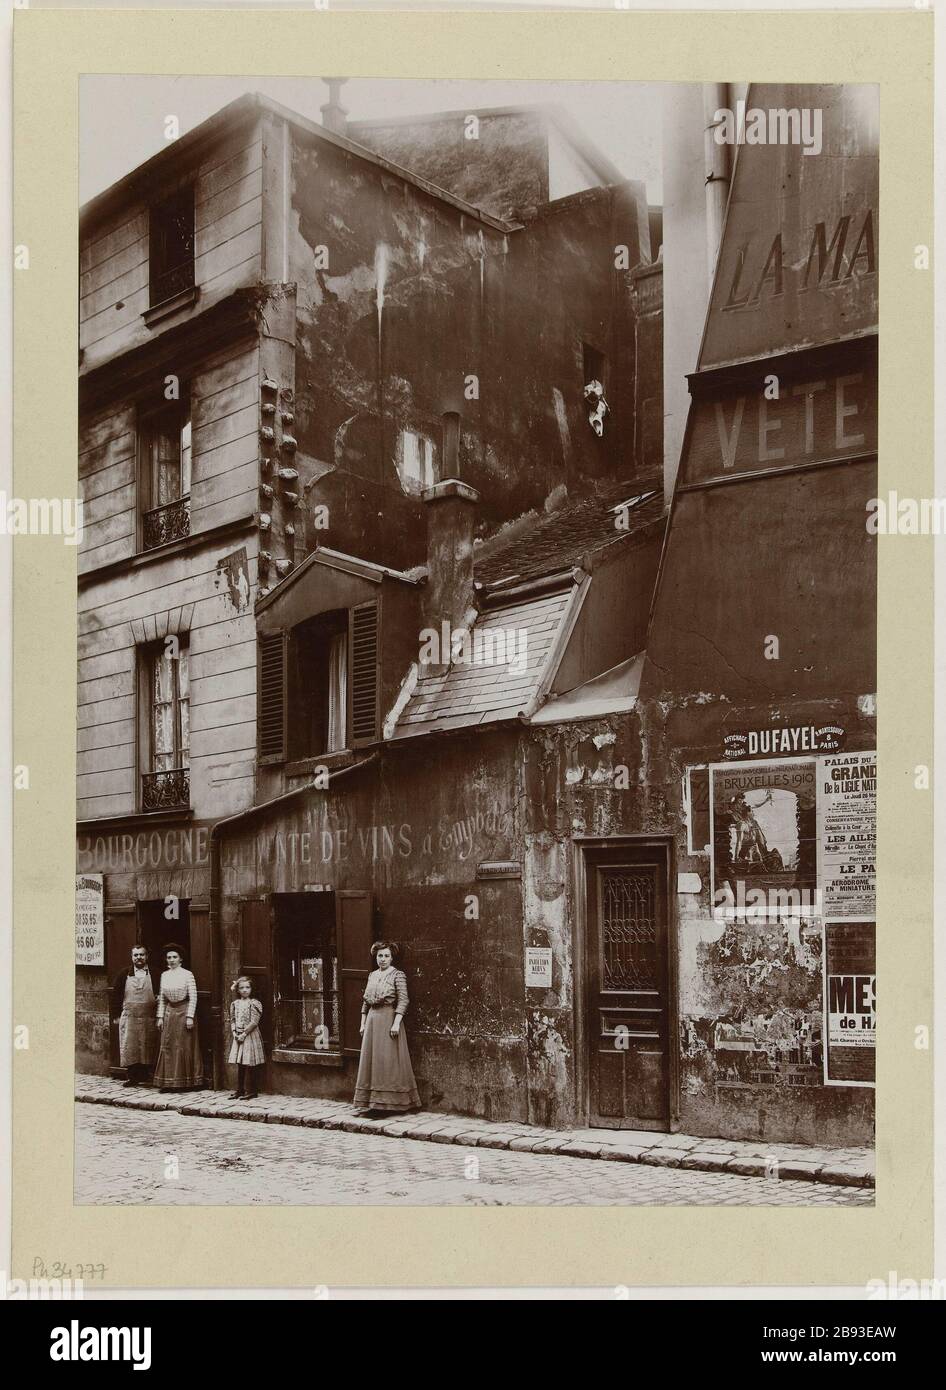 View of a drinking establishment house, Paris Anonyme. 'Vue d'une maison de débit de boisson, Paris'. Aristotype. en. Paris, musée Carnavalet. Stock Photo